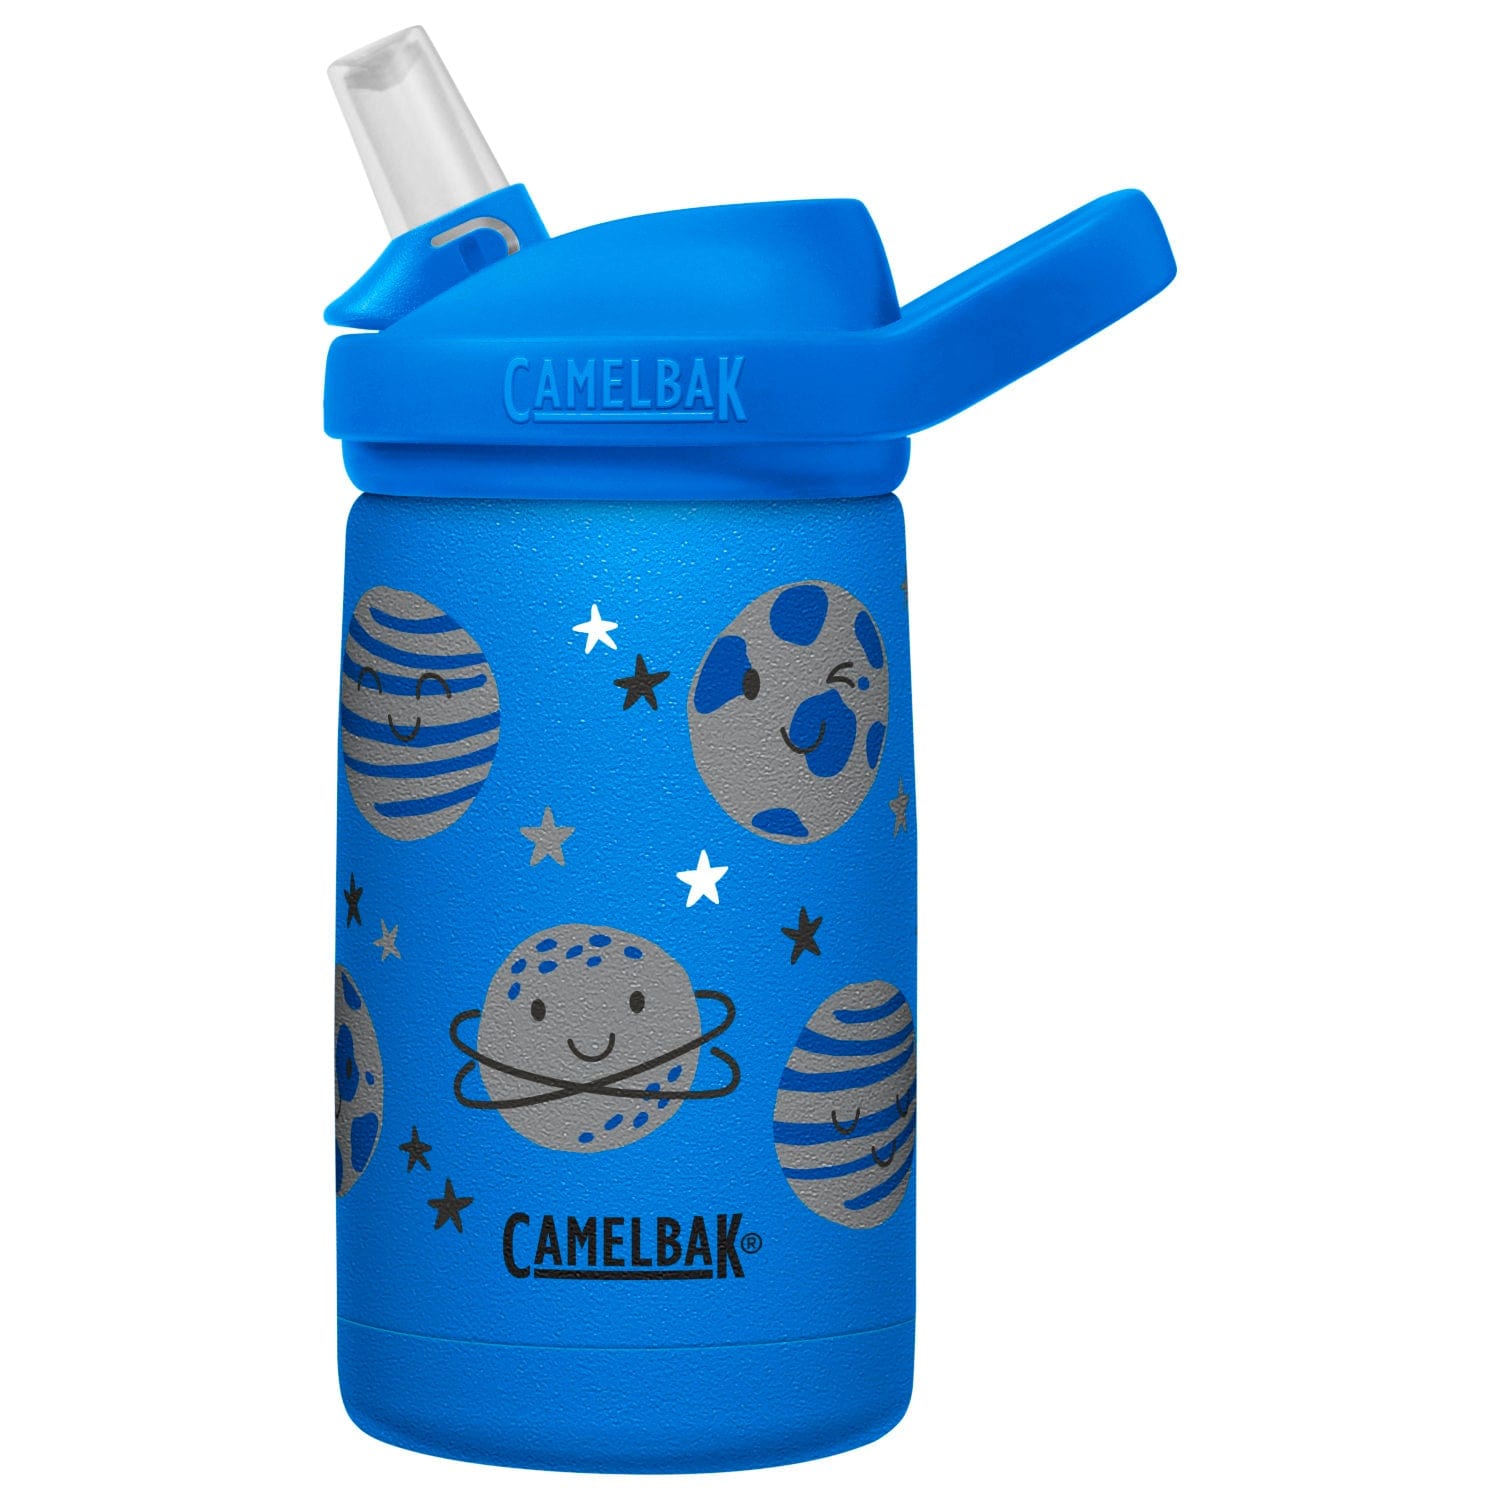 Camelbak Feeding Space Camelbak Eddy+ Kids 350ml Insulated Stainless Steel Drink Bottle